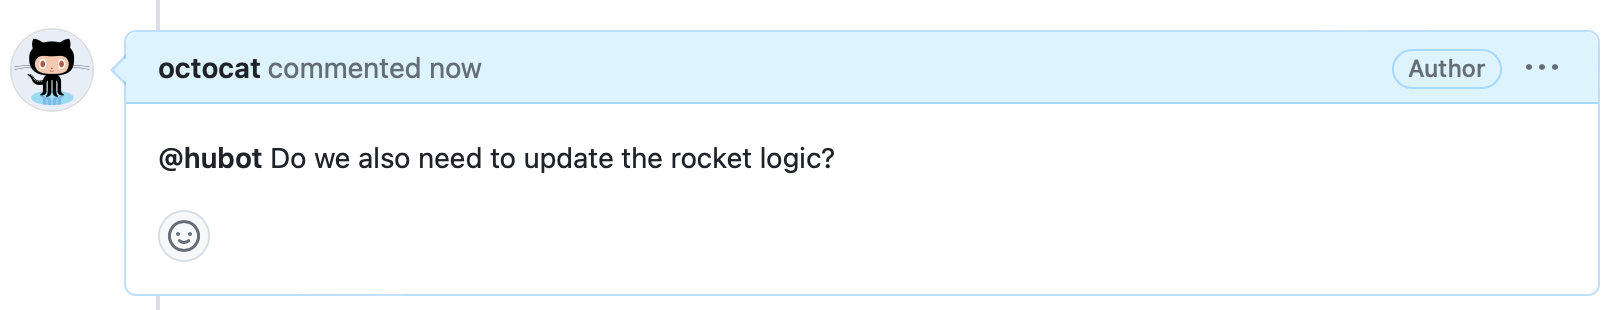 이슈 주석의 스크린샷. 머리글은 "Octocat이 지금 댓글을 달았습니다"라고 되어 있으며, 본문은 "@hubot 로켓 로직을 업데이트해야 합니까?"라고 되어 있습니다.